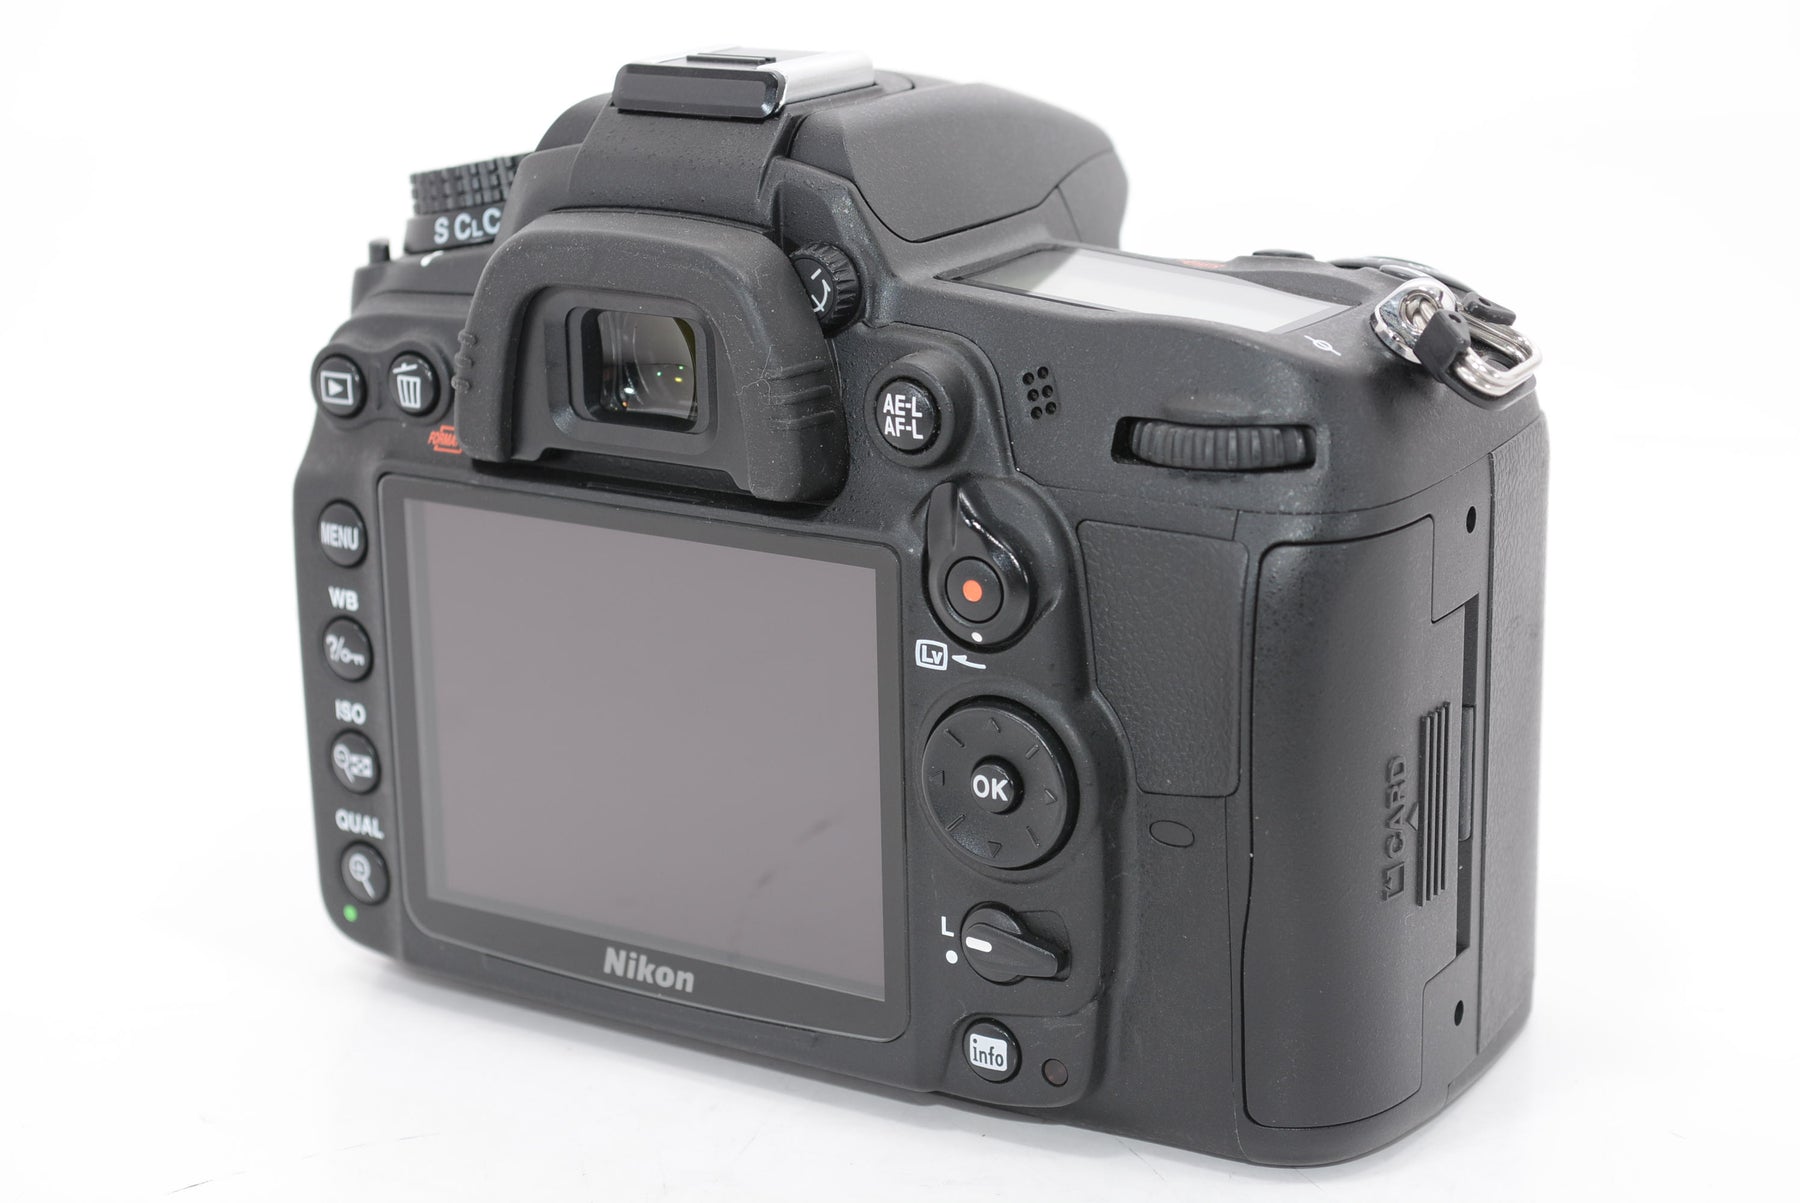 【外観特上級】Nikon デジタル一眼レフカメラ D7000 ボディー